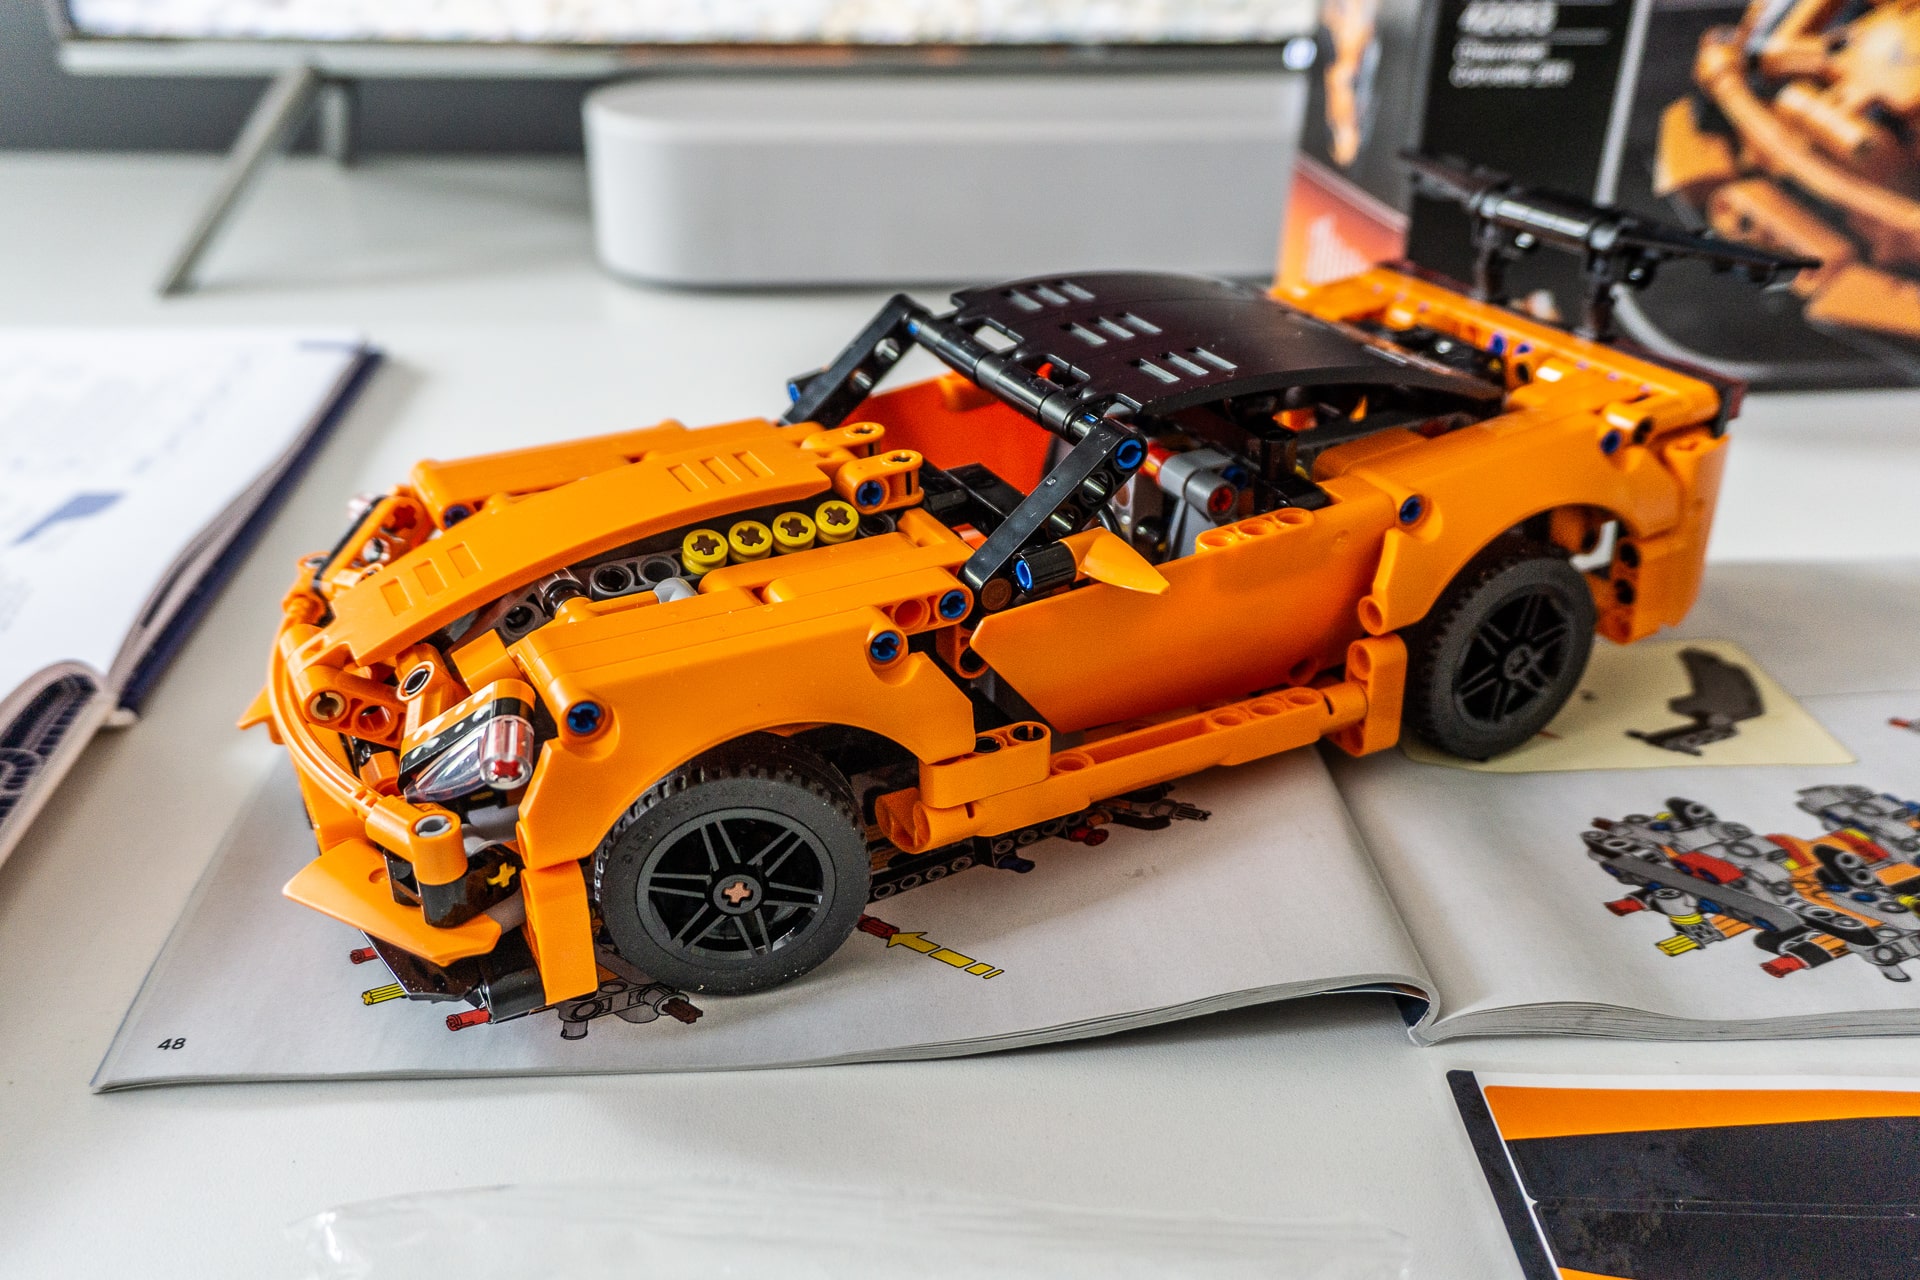 Kami bermain tanpa listrik: LEGO Chevrolet Corvette ZR1 adalah rasio harga-konten yang bagus. Kejutan positif